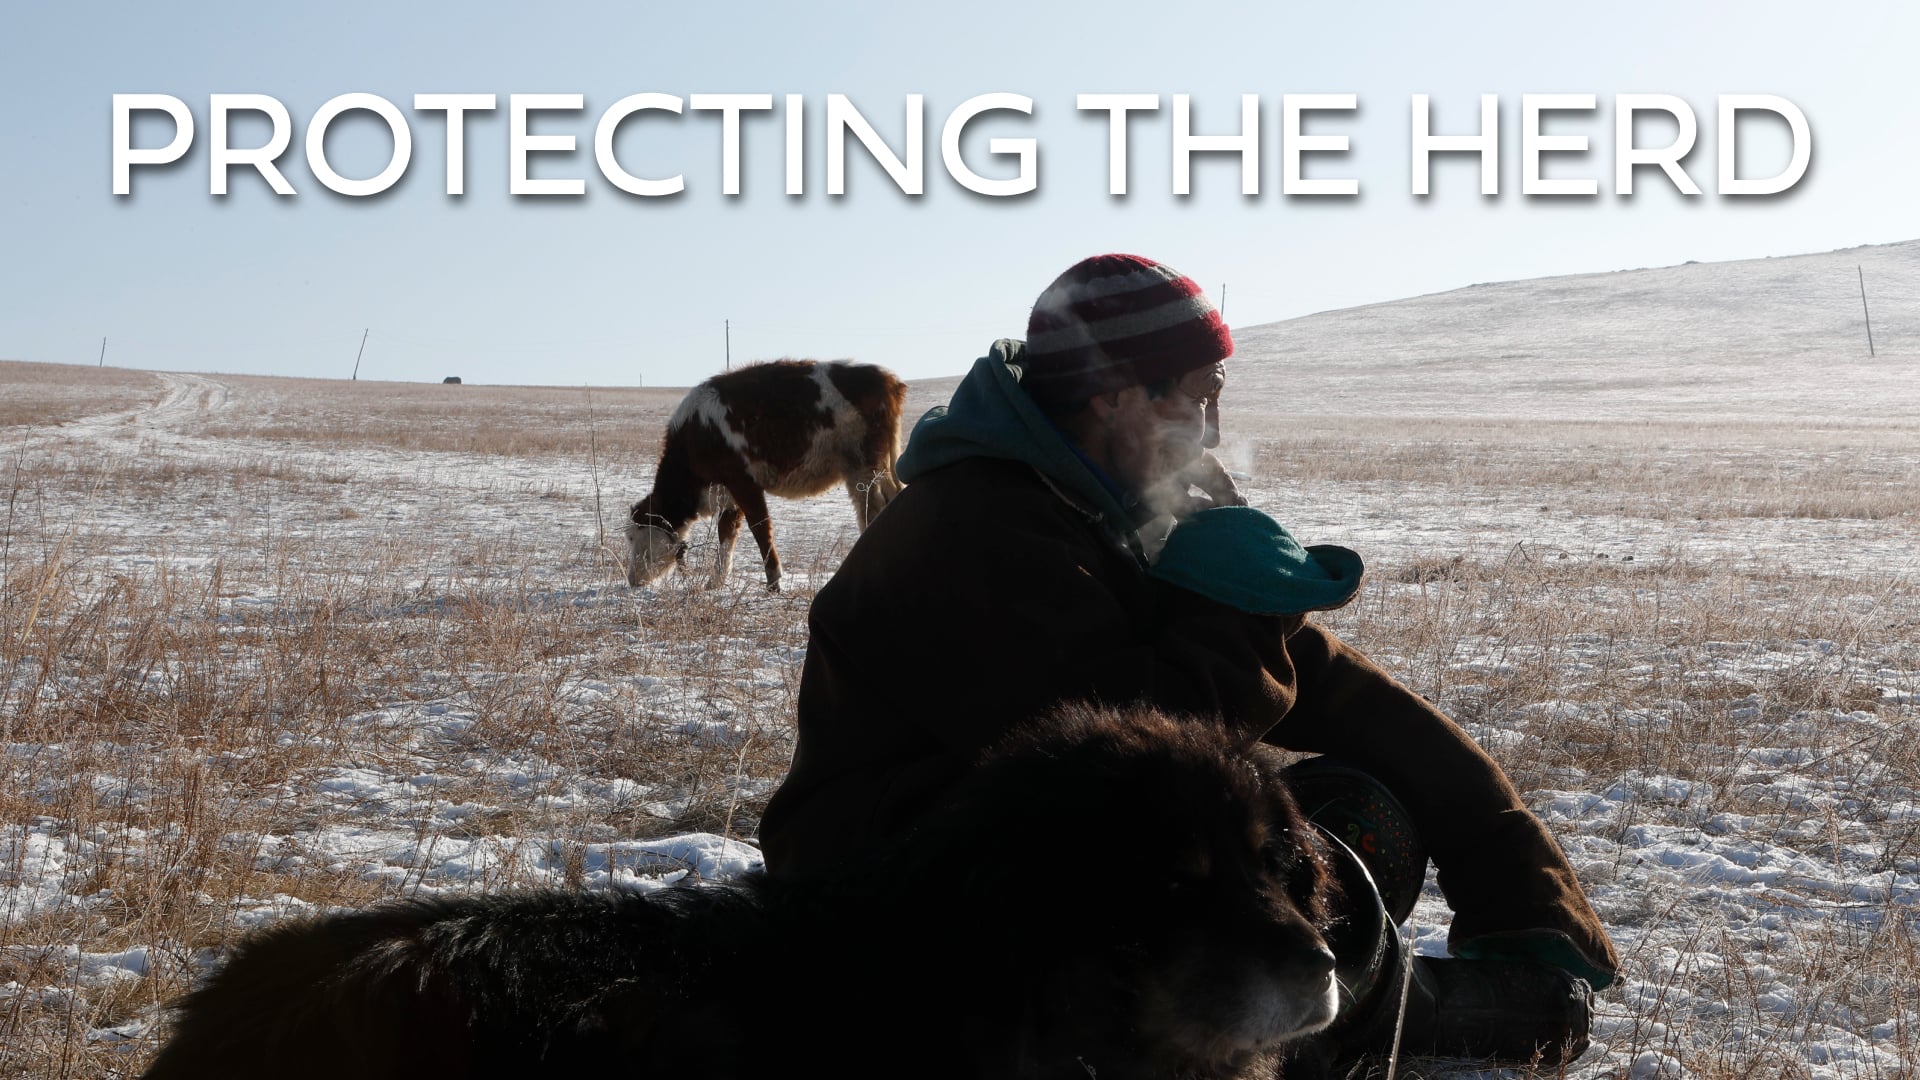 Global Eyewitness Mongolia: Protecting the Herd